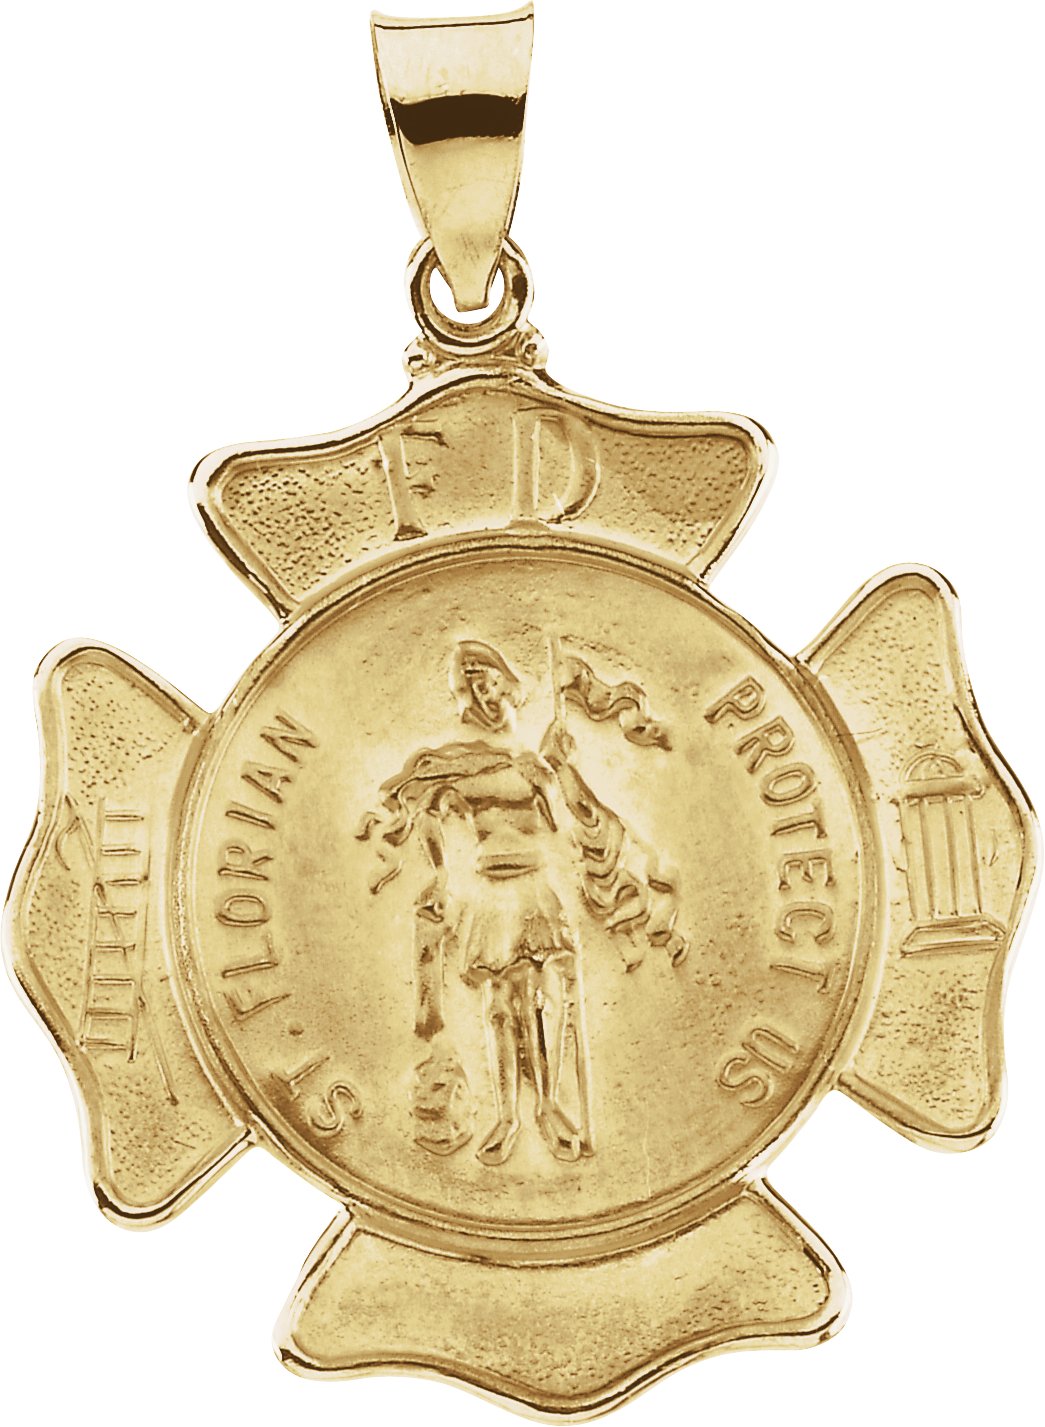 Hollow St. Florian Medal 25.25 x 25.25mm Ref 674816